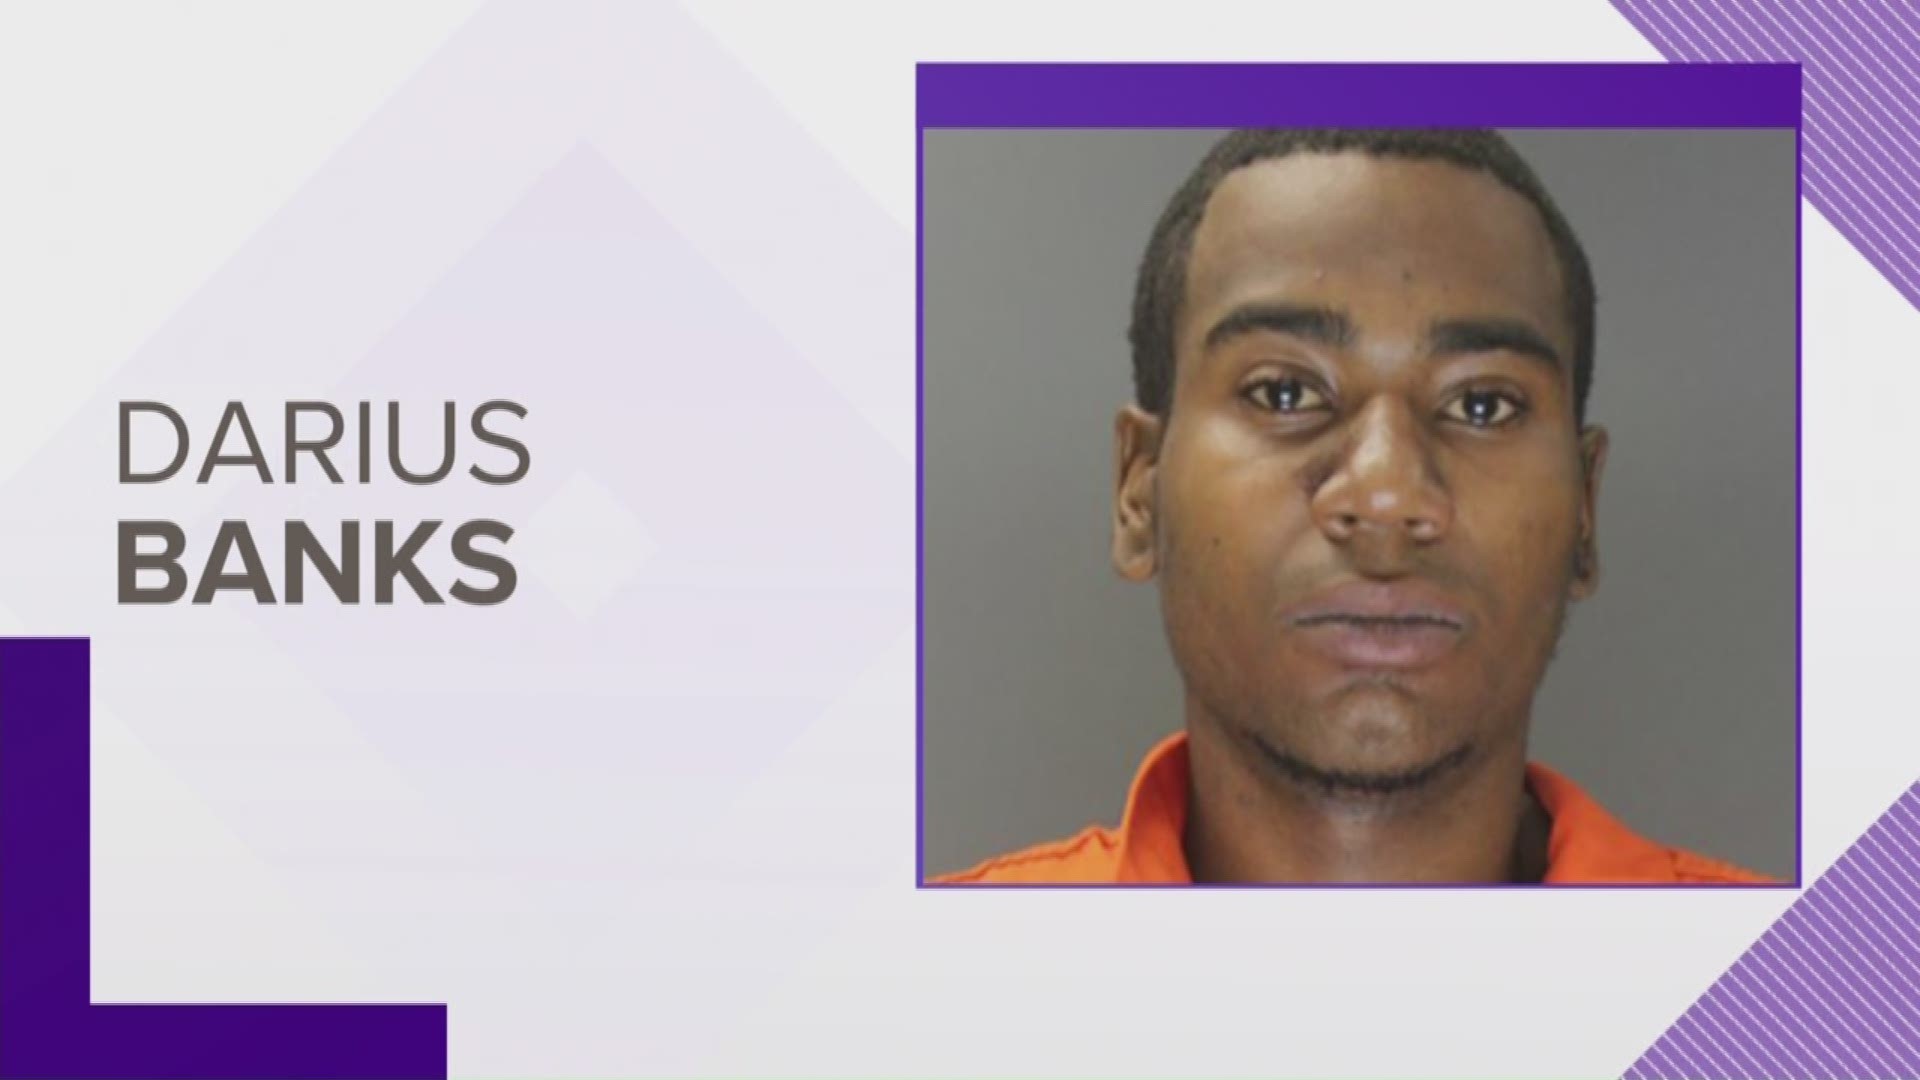 Darius Banks, 19, was twirling the gun around when it went off striking his cousin, according to an arrest affidavit.